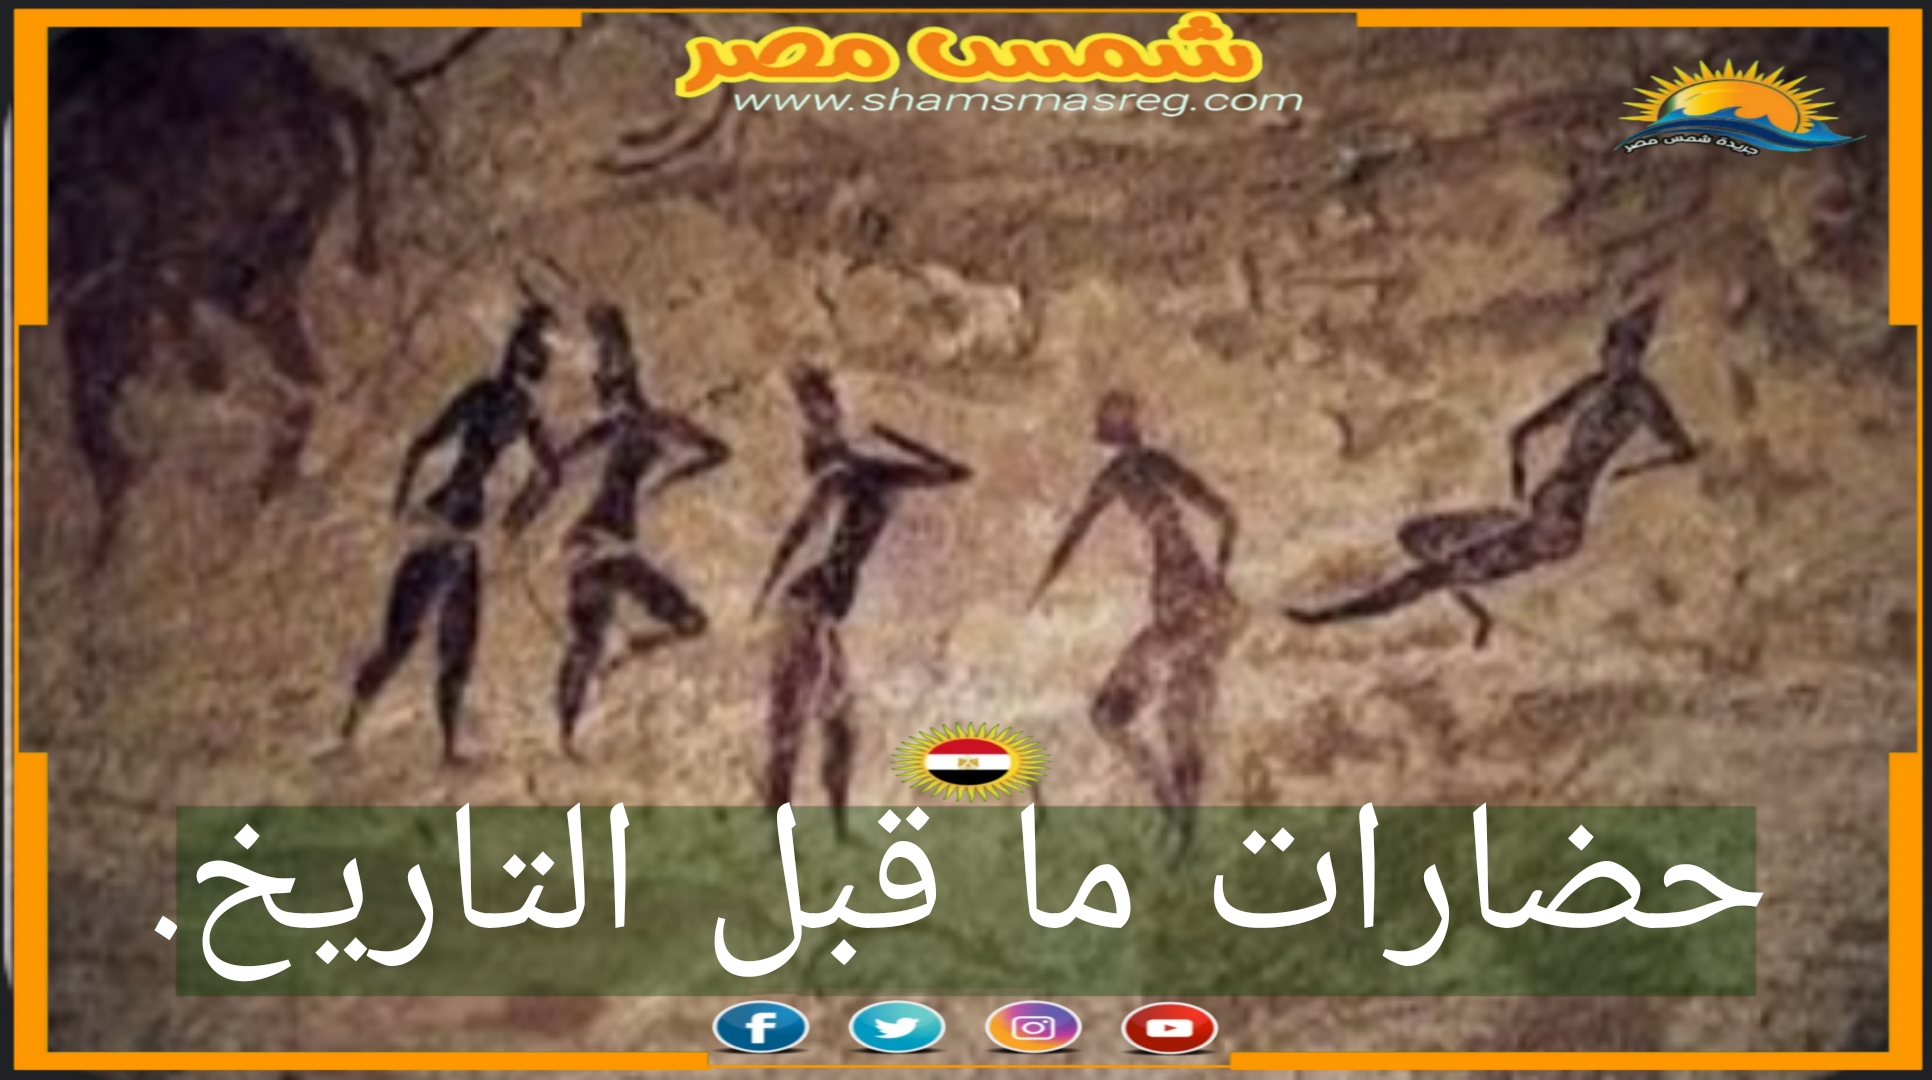 شمس مصر/ حضارات ما قبل التاريخ.